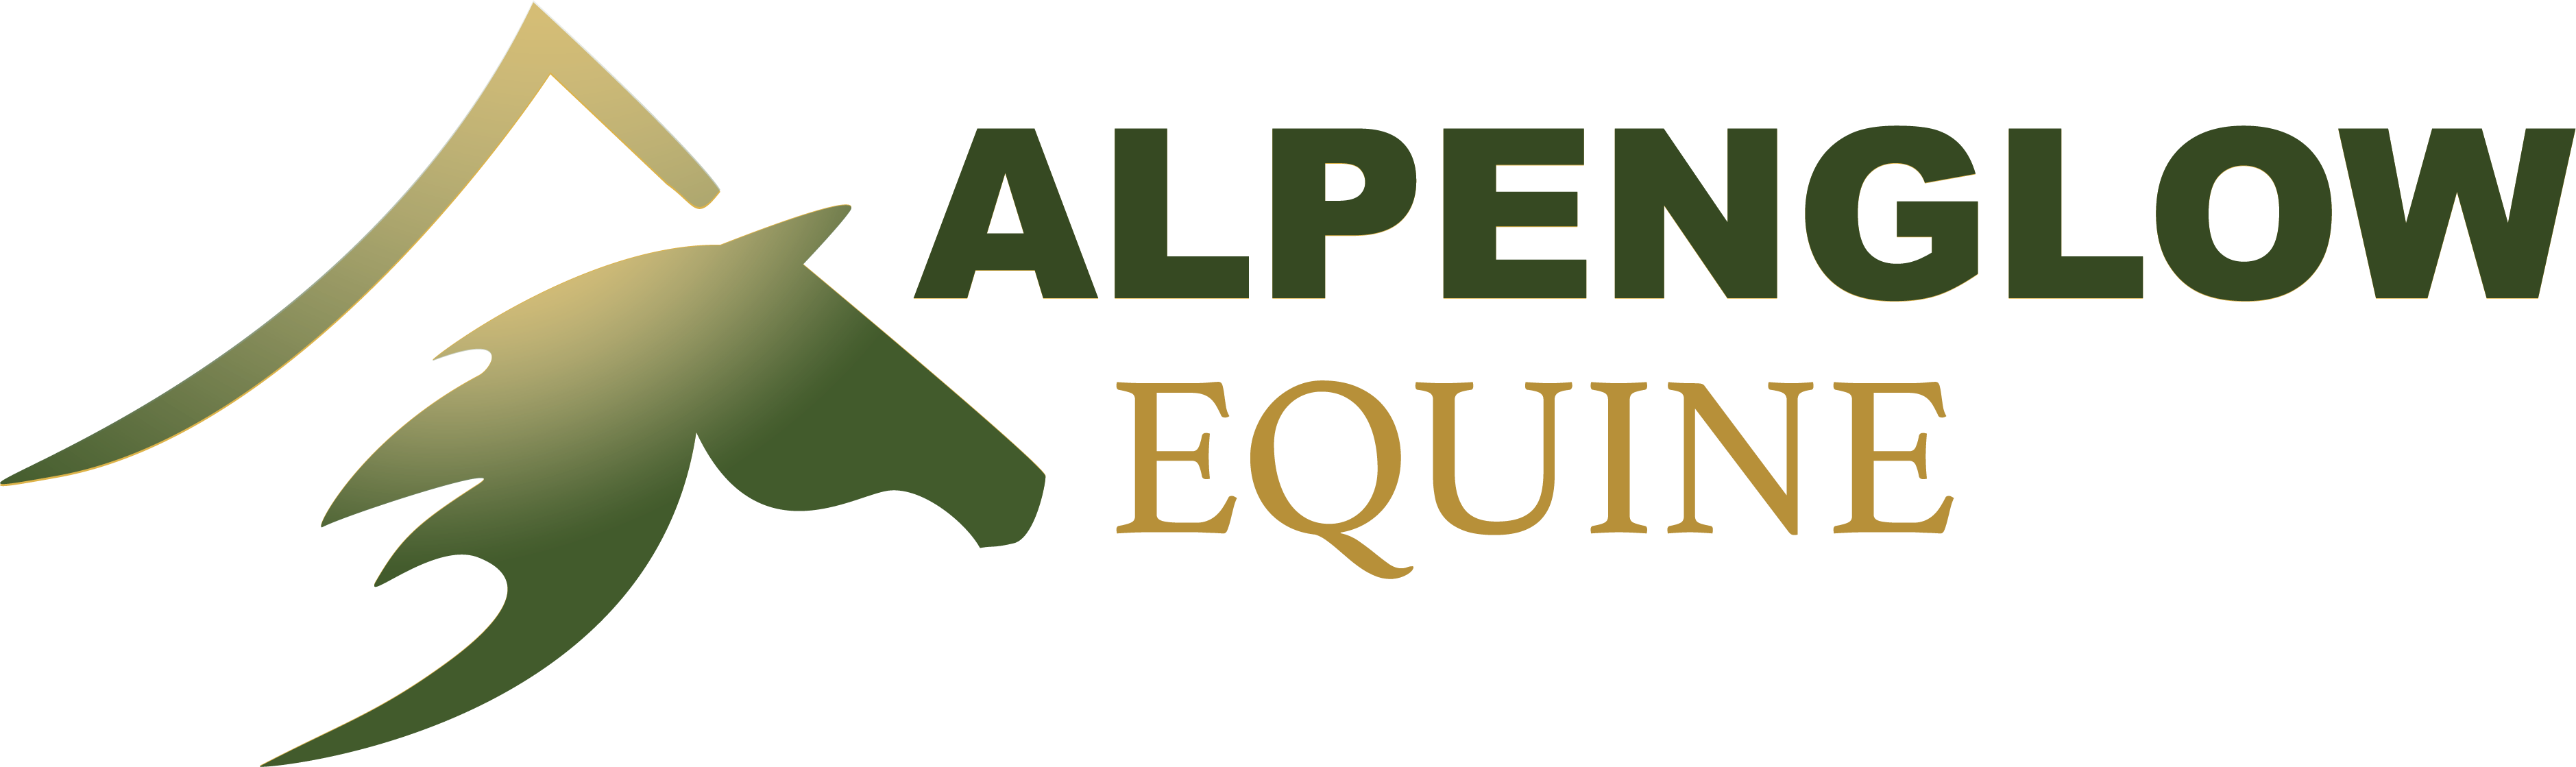 Alpenglow Equine